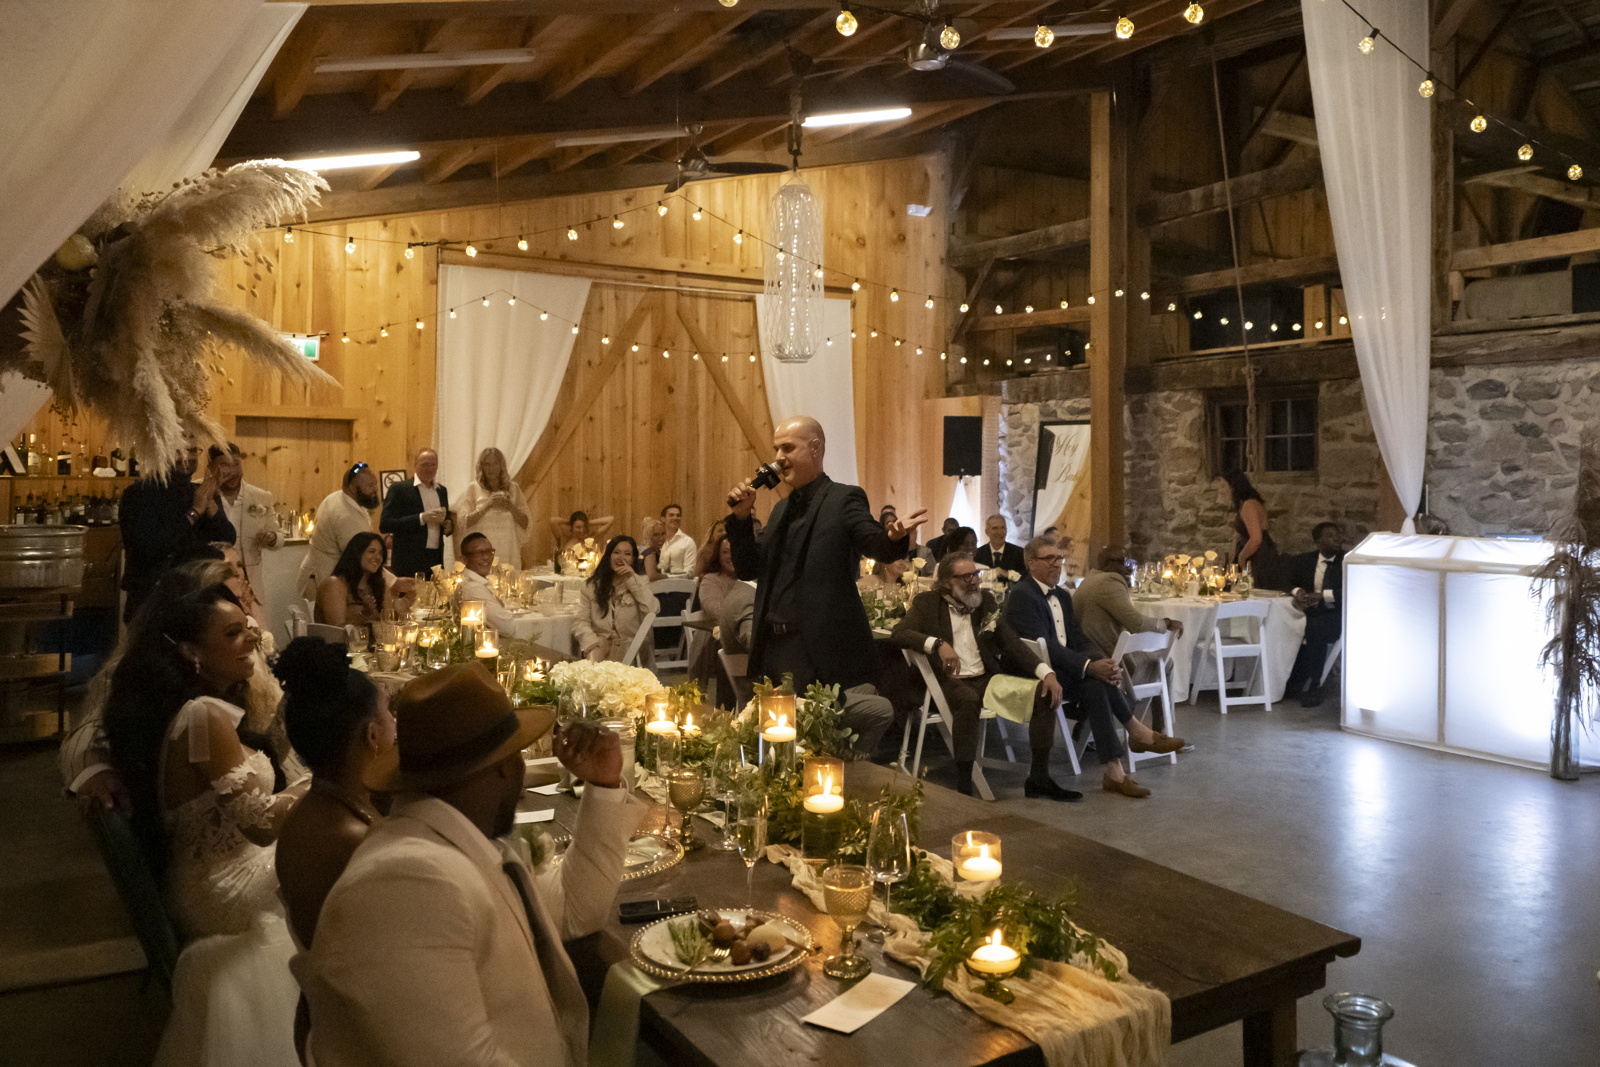 Wedding reception in the barn